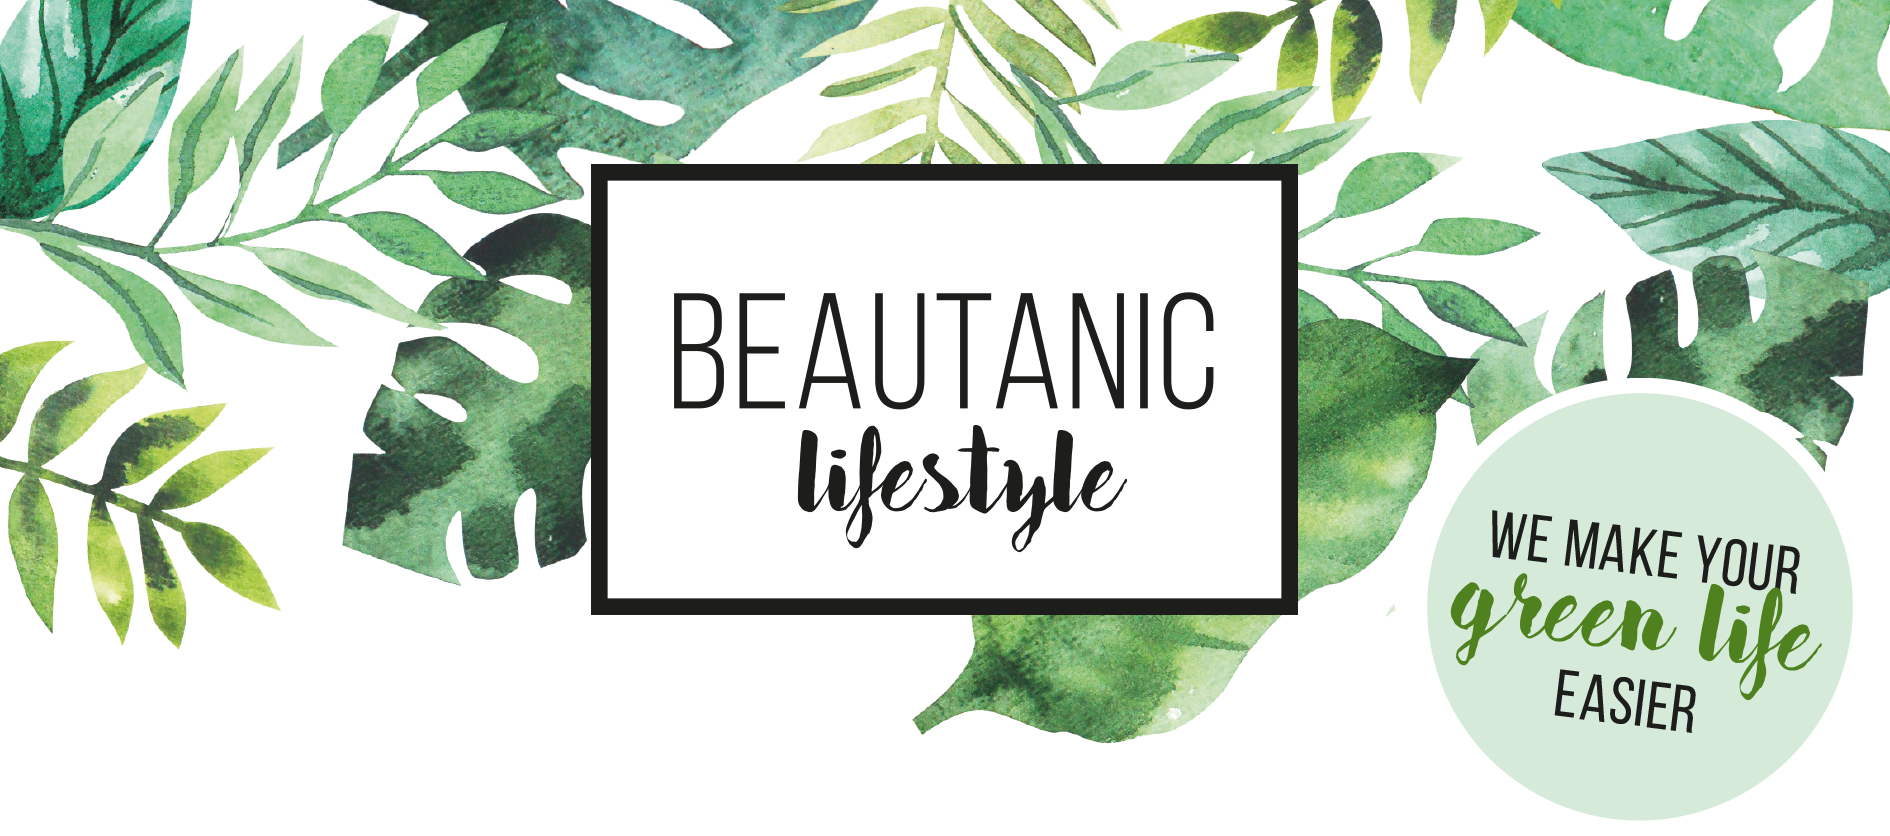 Video laden: Video über die Vorteile von Beautanic Lifestyle